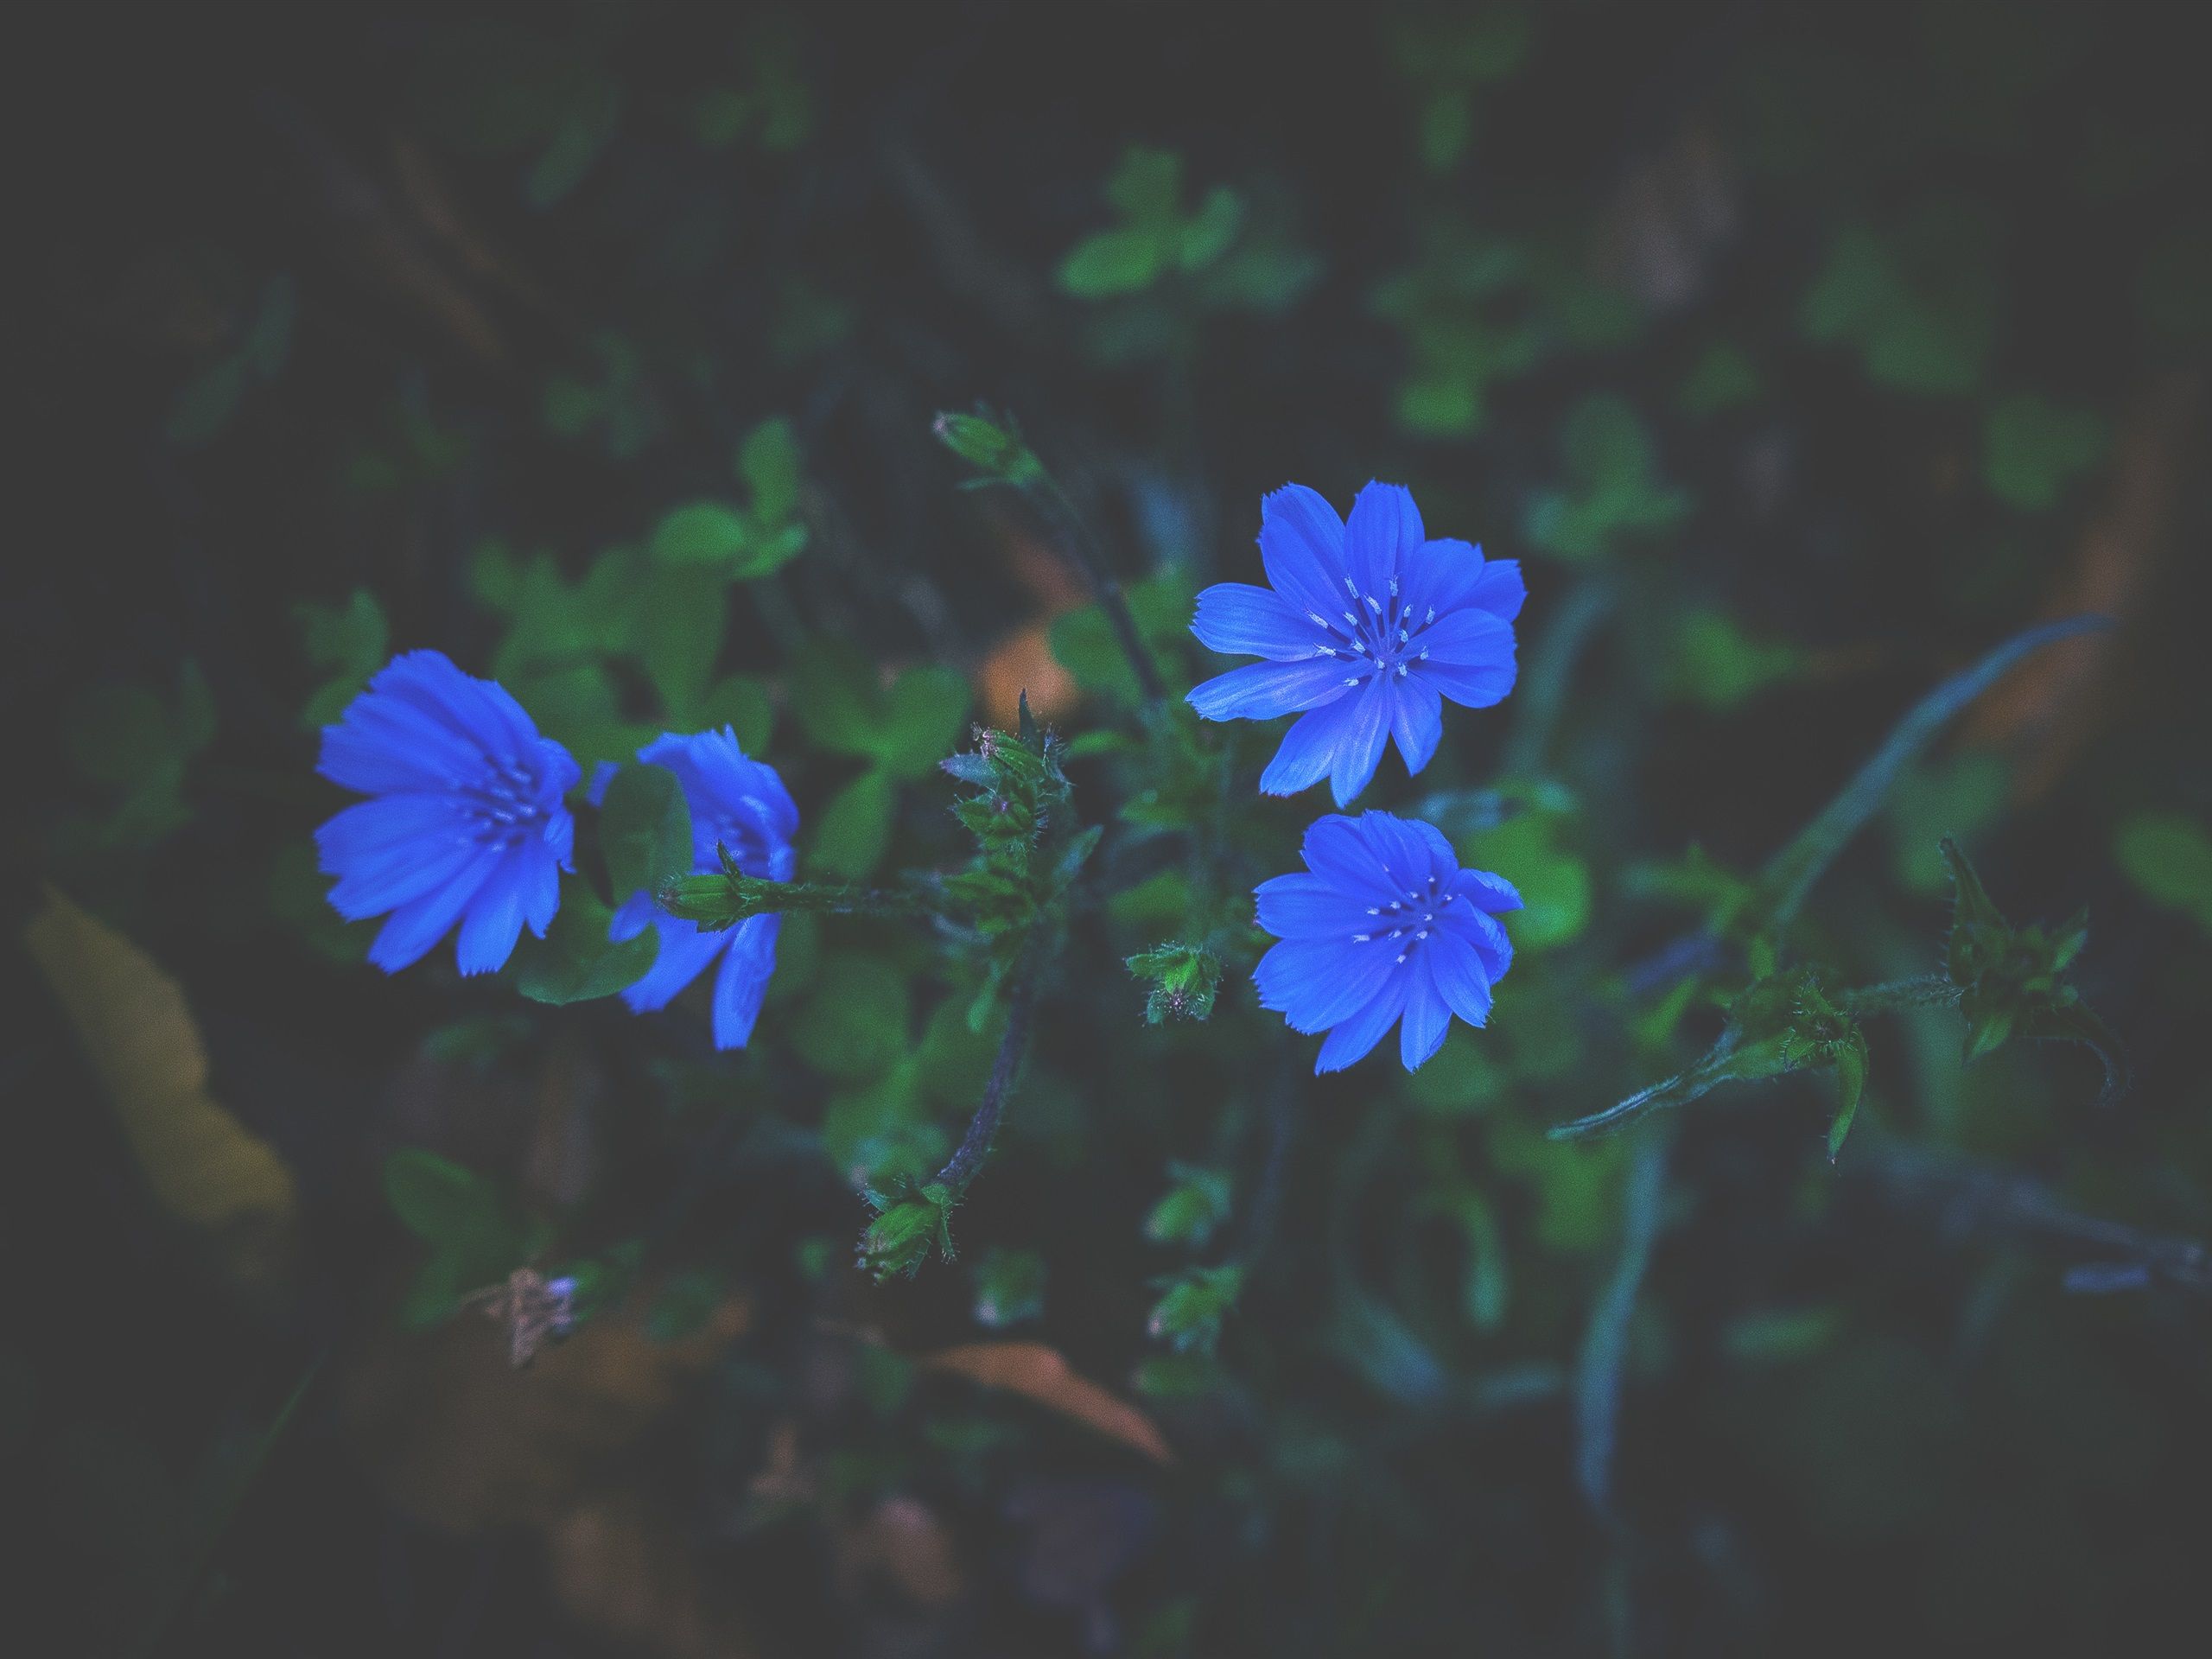 Verschwommen Hintergrundbild 2560x1920. Kleine blaue Blumen, Gras, verschwommen 3840x2160 UHD 4K Hintergrundbilder, HD, Bild